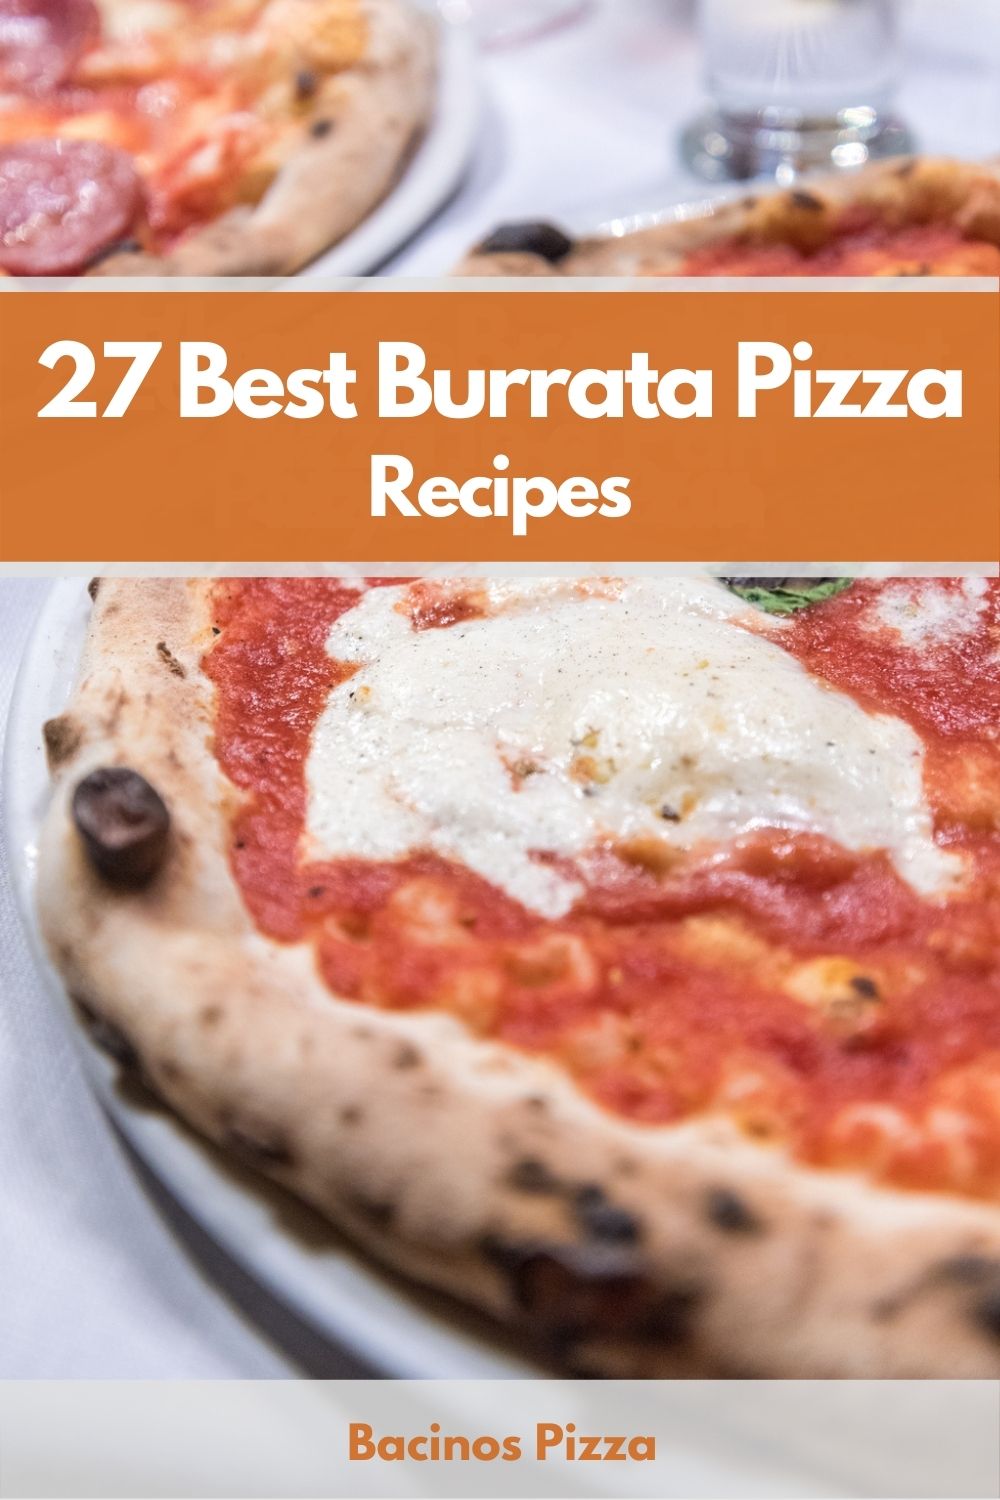 27 Best Burrata Pizza Recipes pin